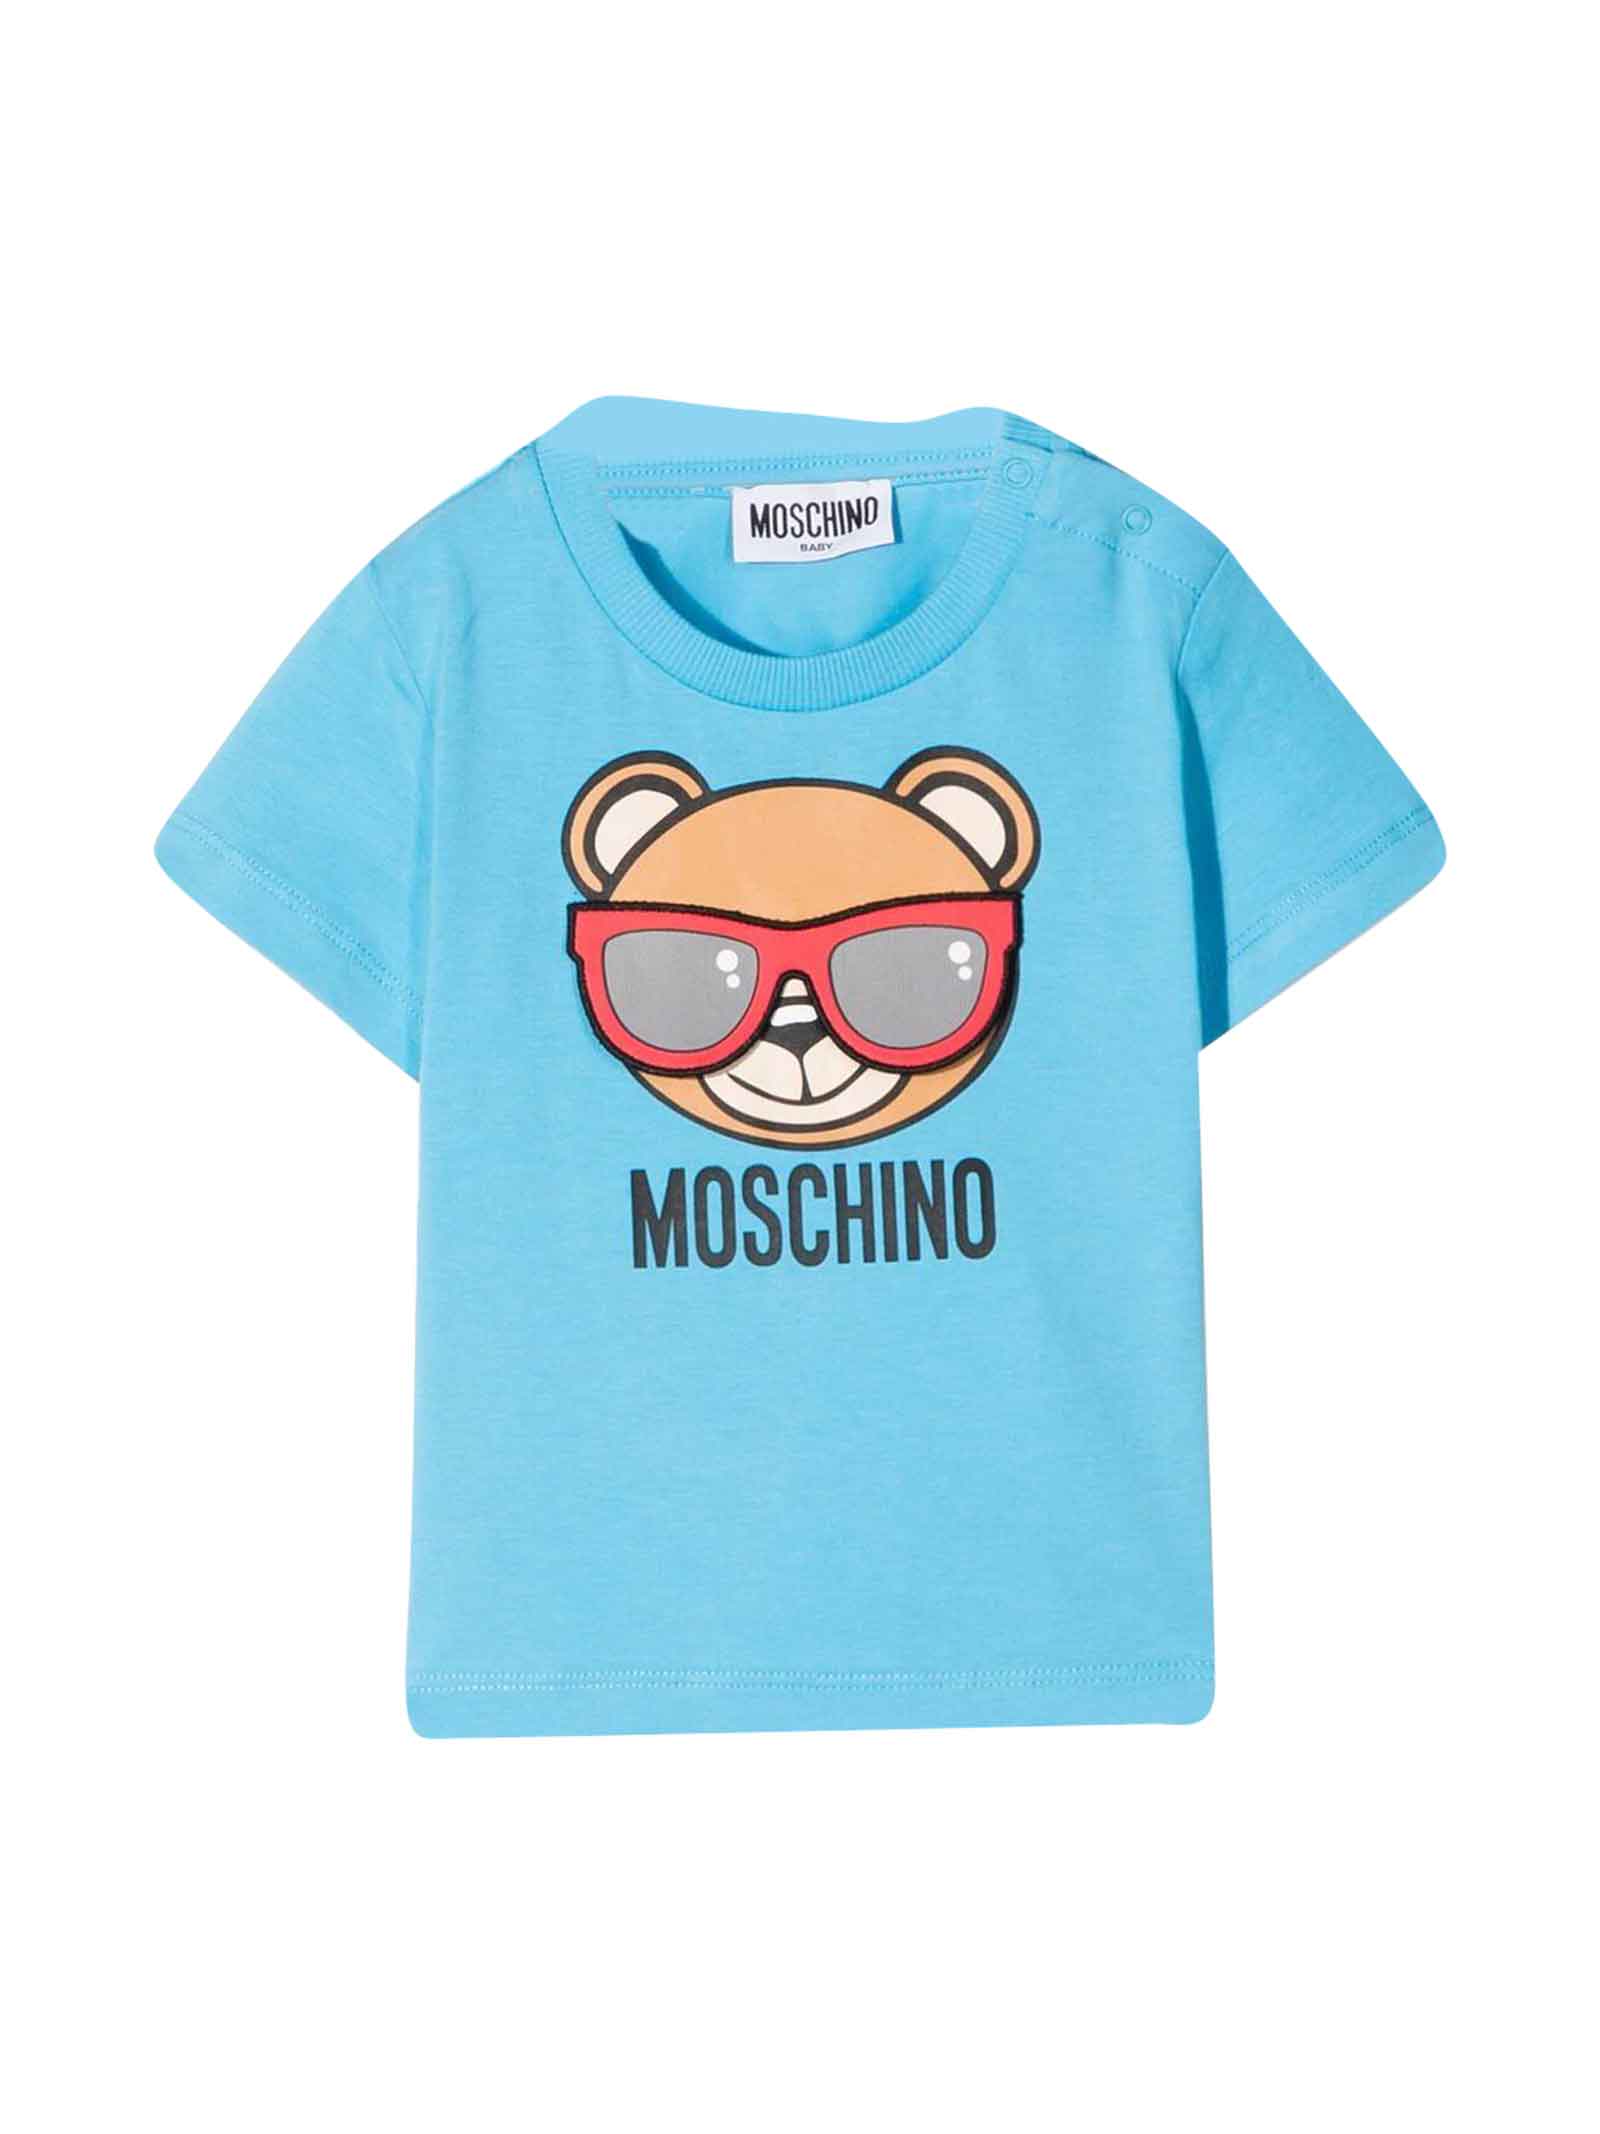 Moschino Blue T-shirt Baby Unisex